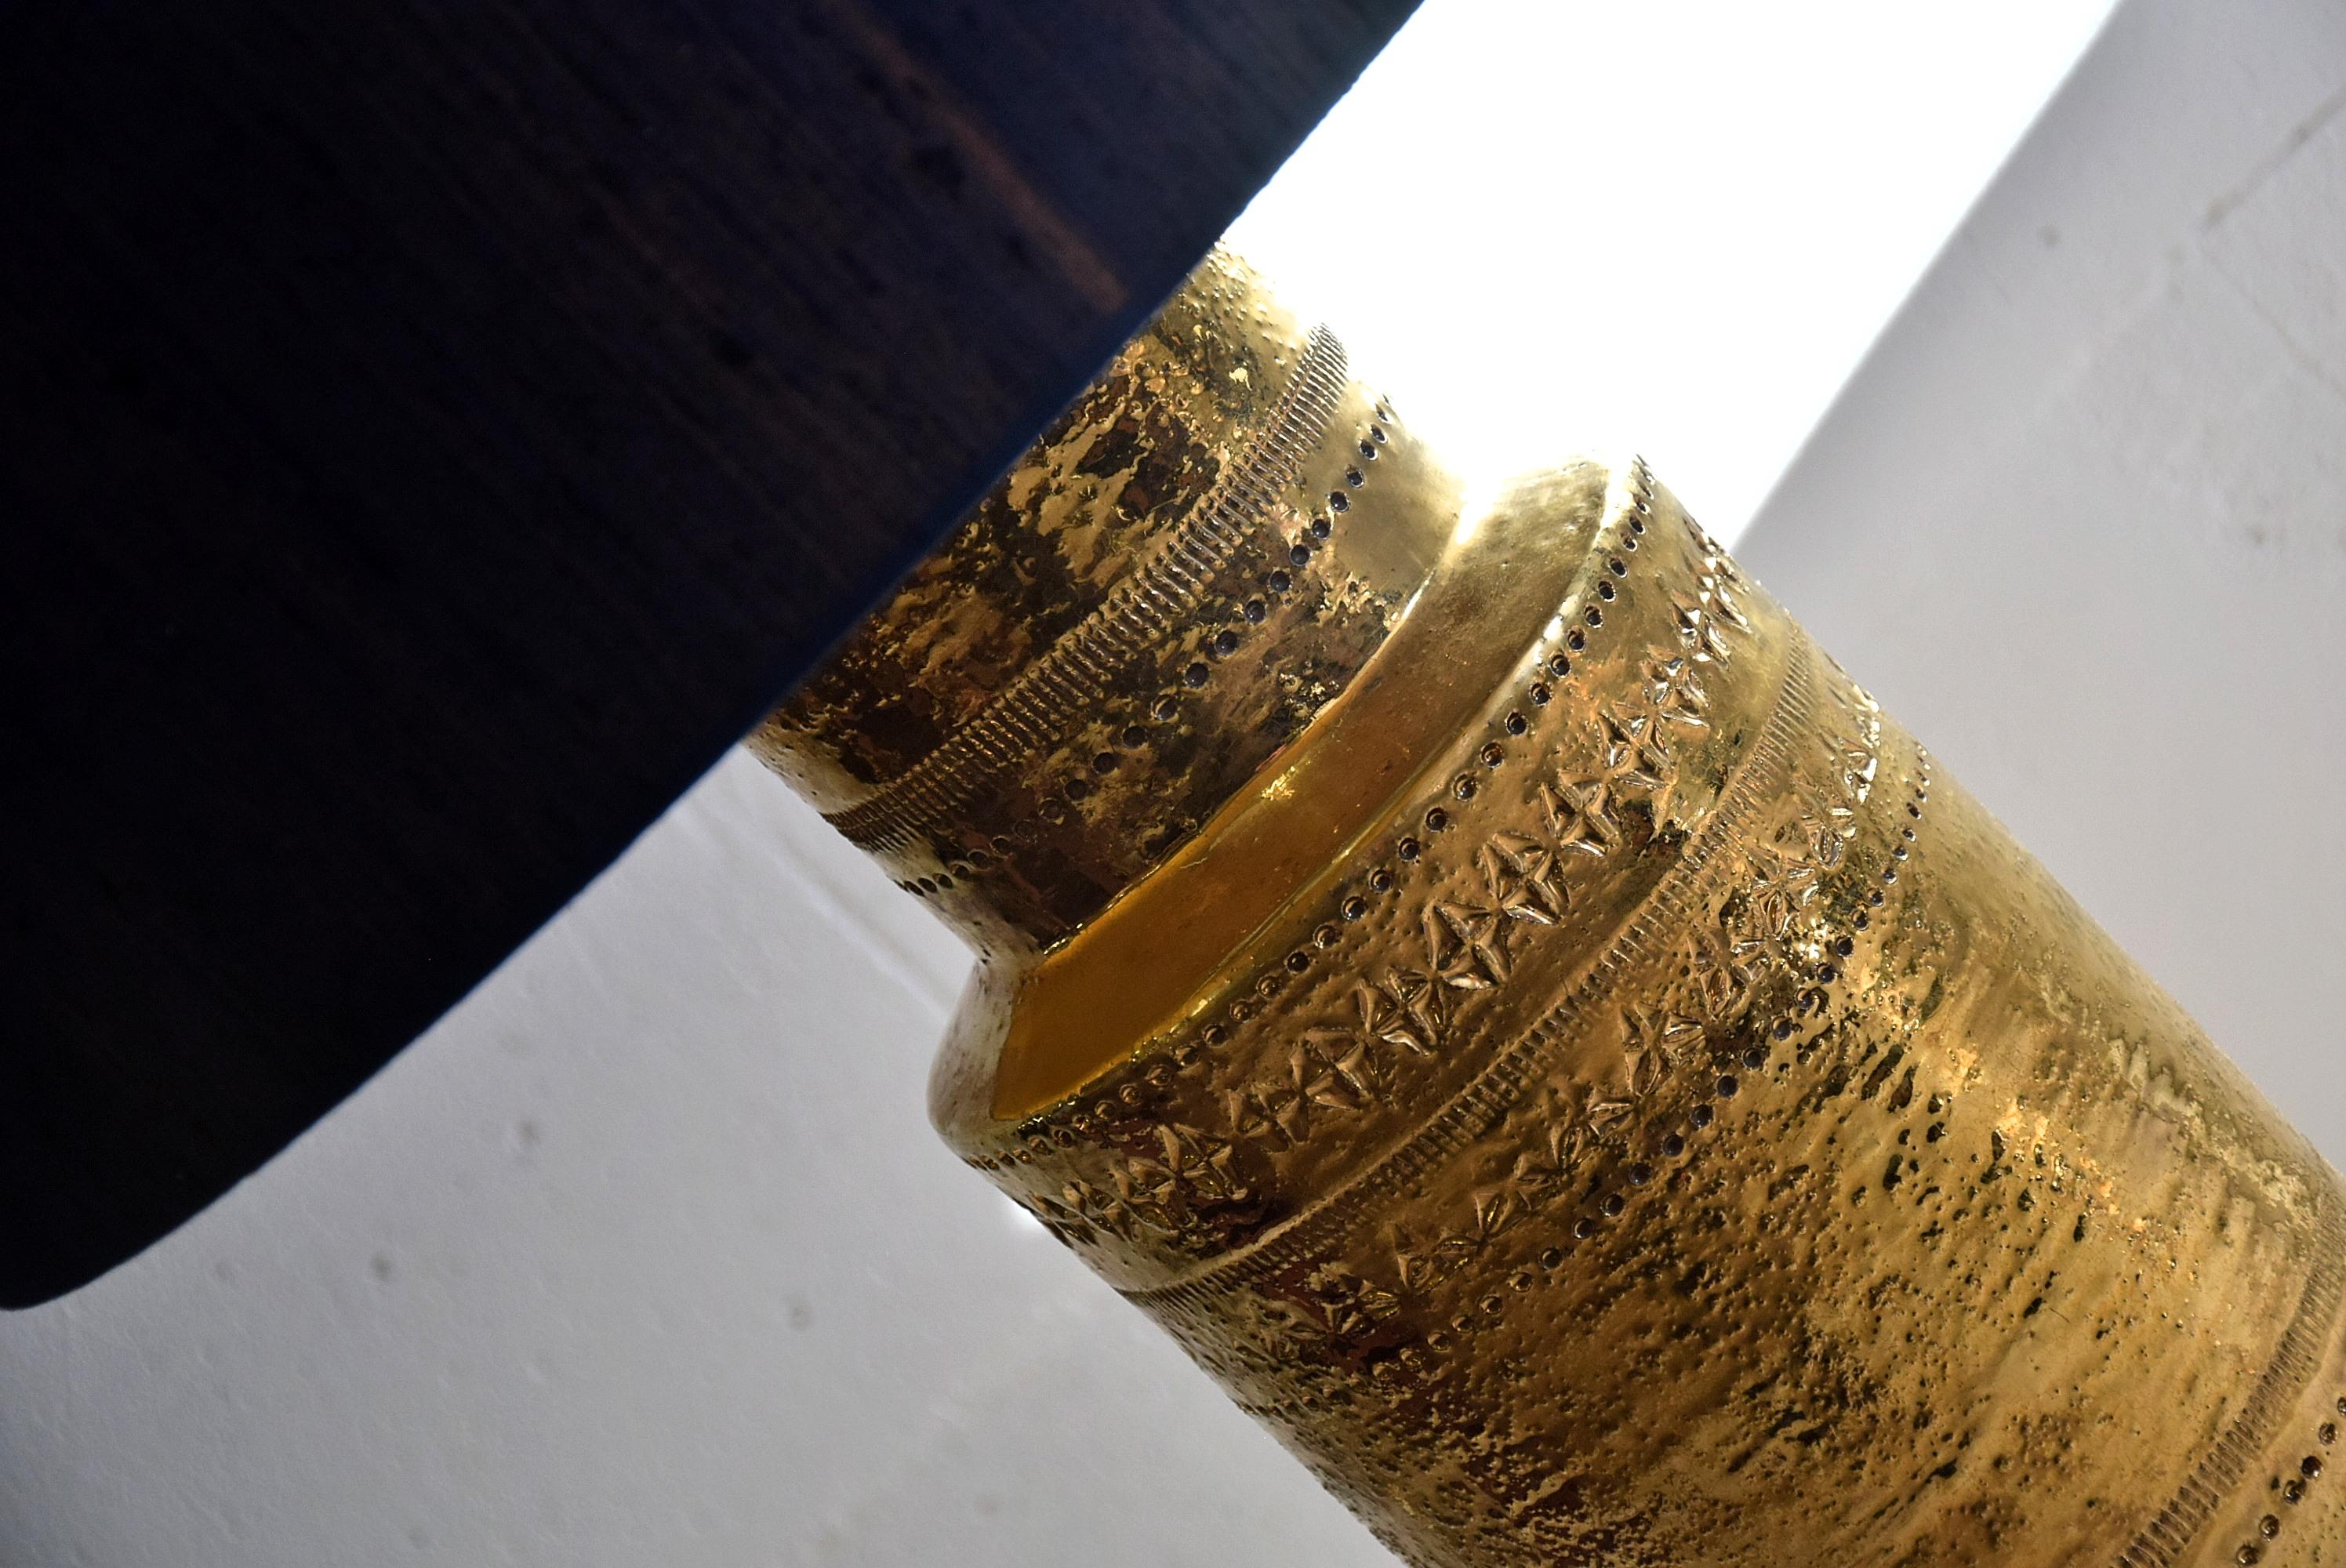 Aldo Londi Keramik Mid-Century Modern Bitossi Tischlampe Zylinder Goldmetallic mit neuen dunkelblauen Seidenschirm. Groß, 95 cm - 37.40 inches, Zylinderkörper in perfektem Zustand mit gestuftem Hals in Goldmetallic-Glasur. Stilvoll verziert mit